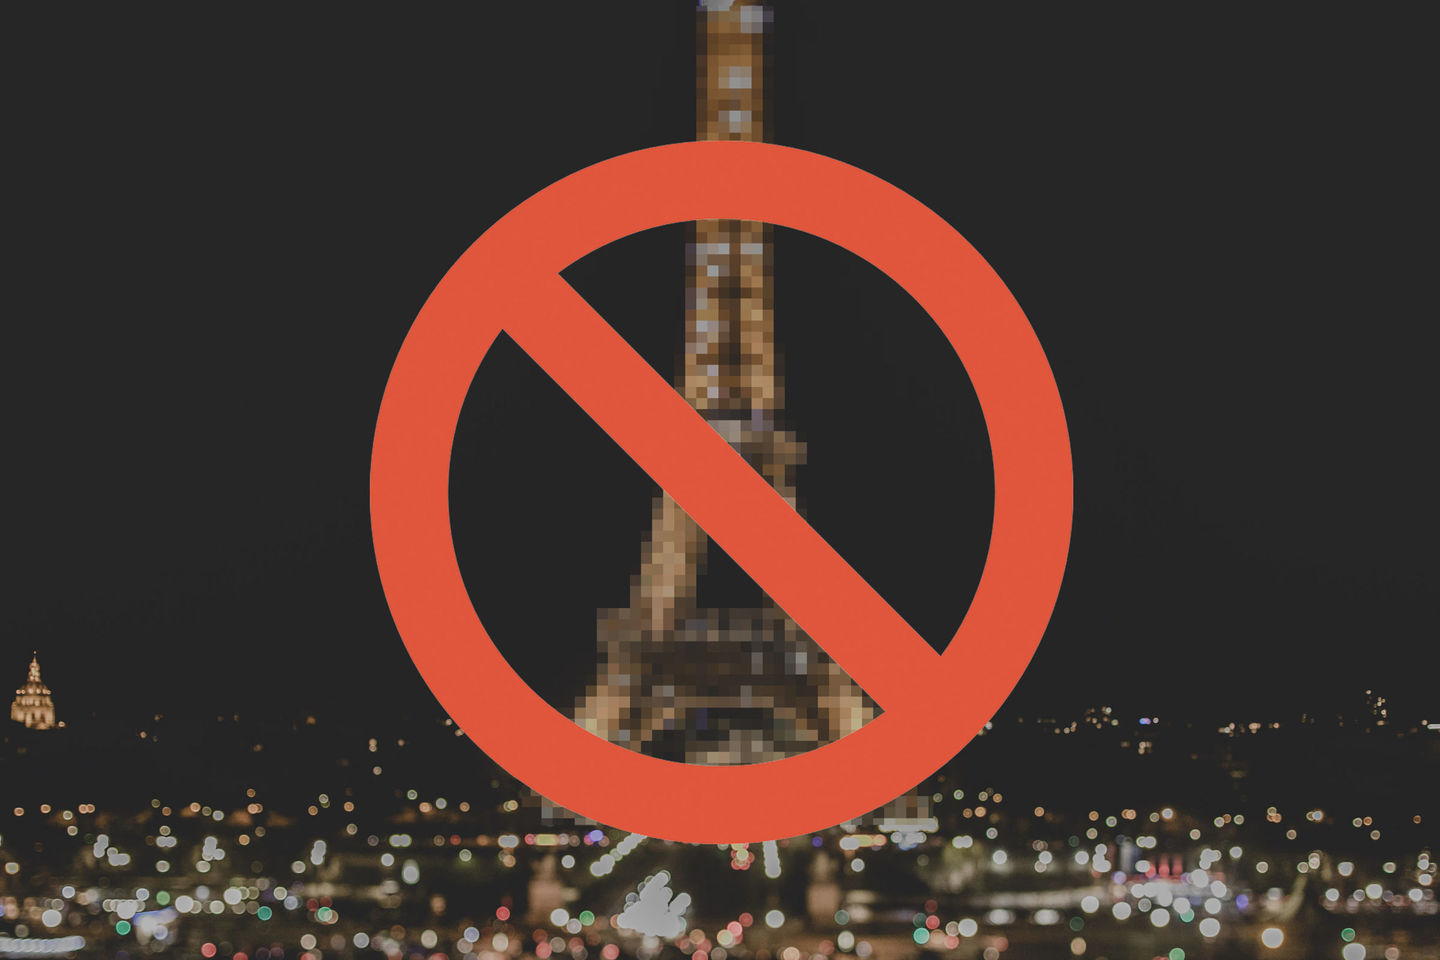 Por que filmar e fotografar a Torre Eiffel a noite é ilegal?